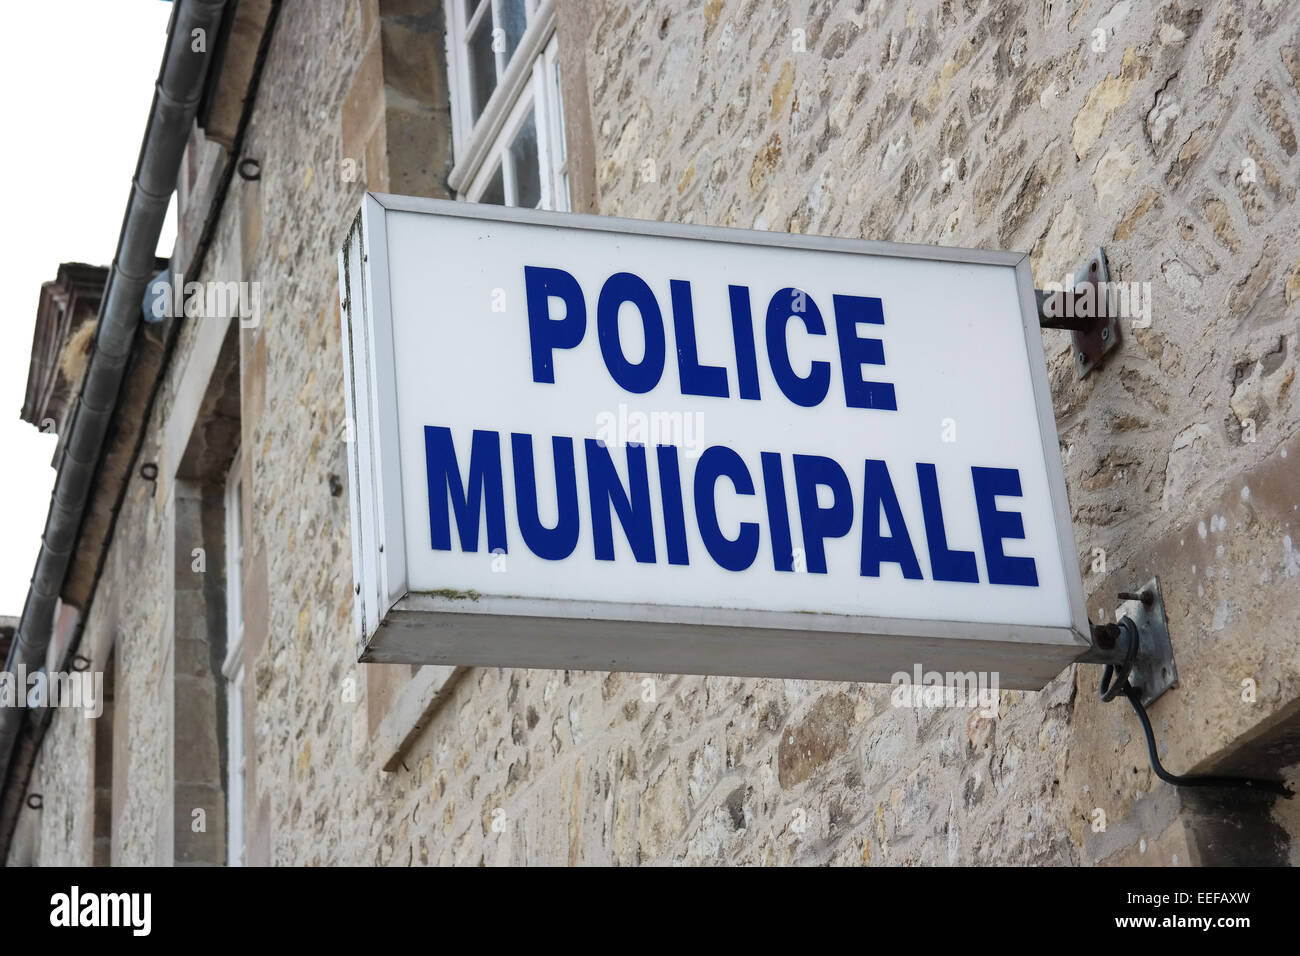 L'usage des cartes de - Police Municipale de Dinard